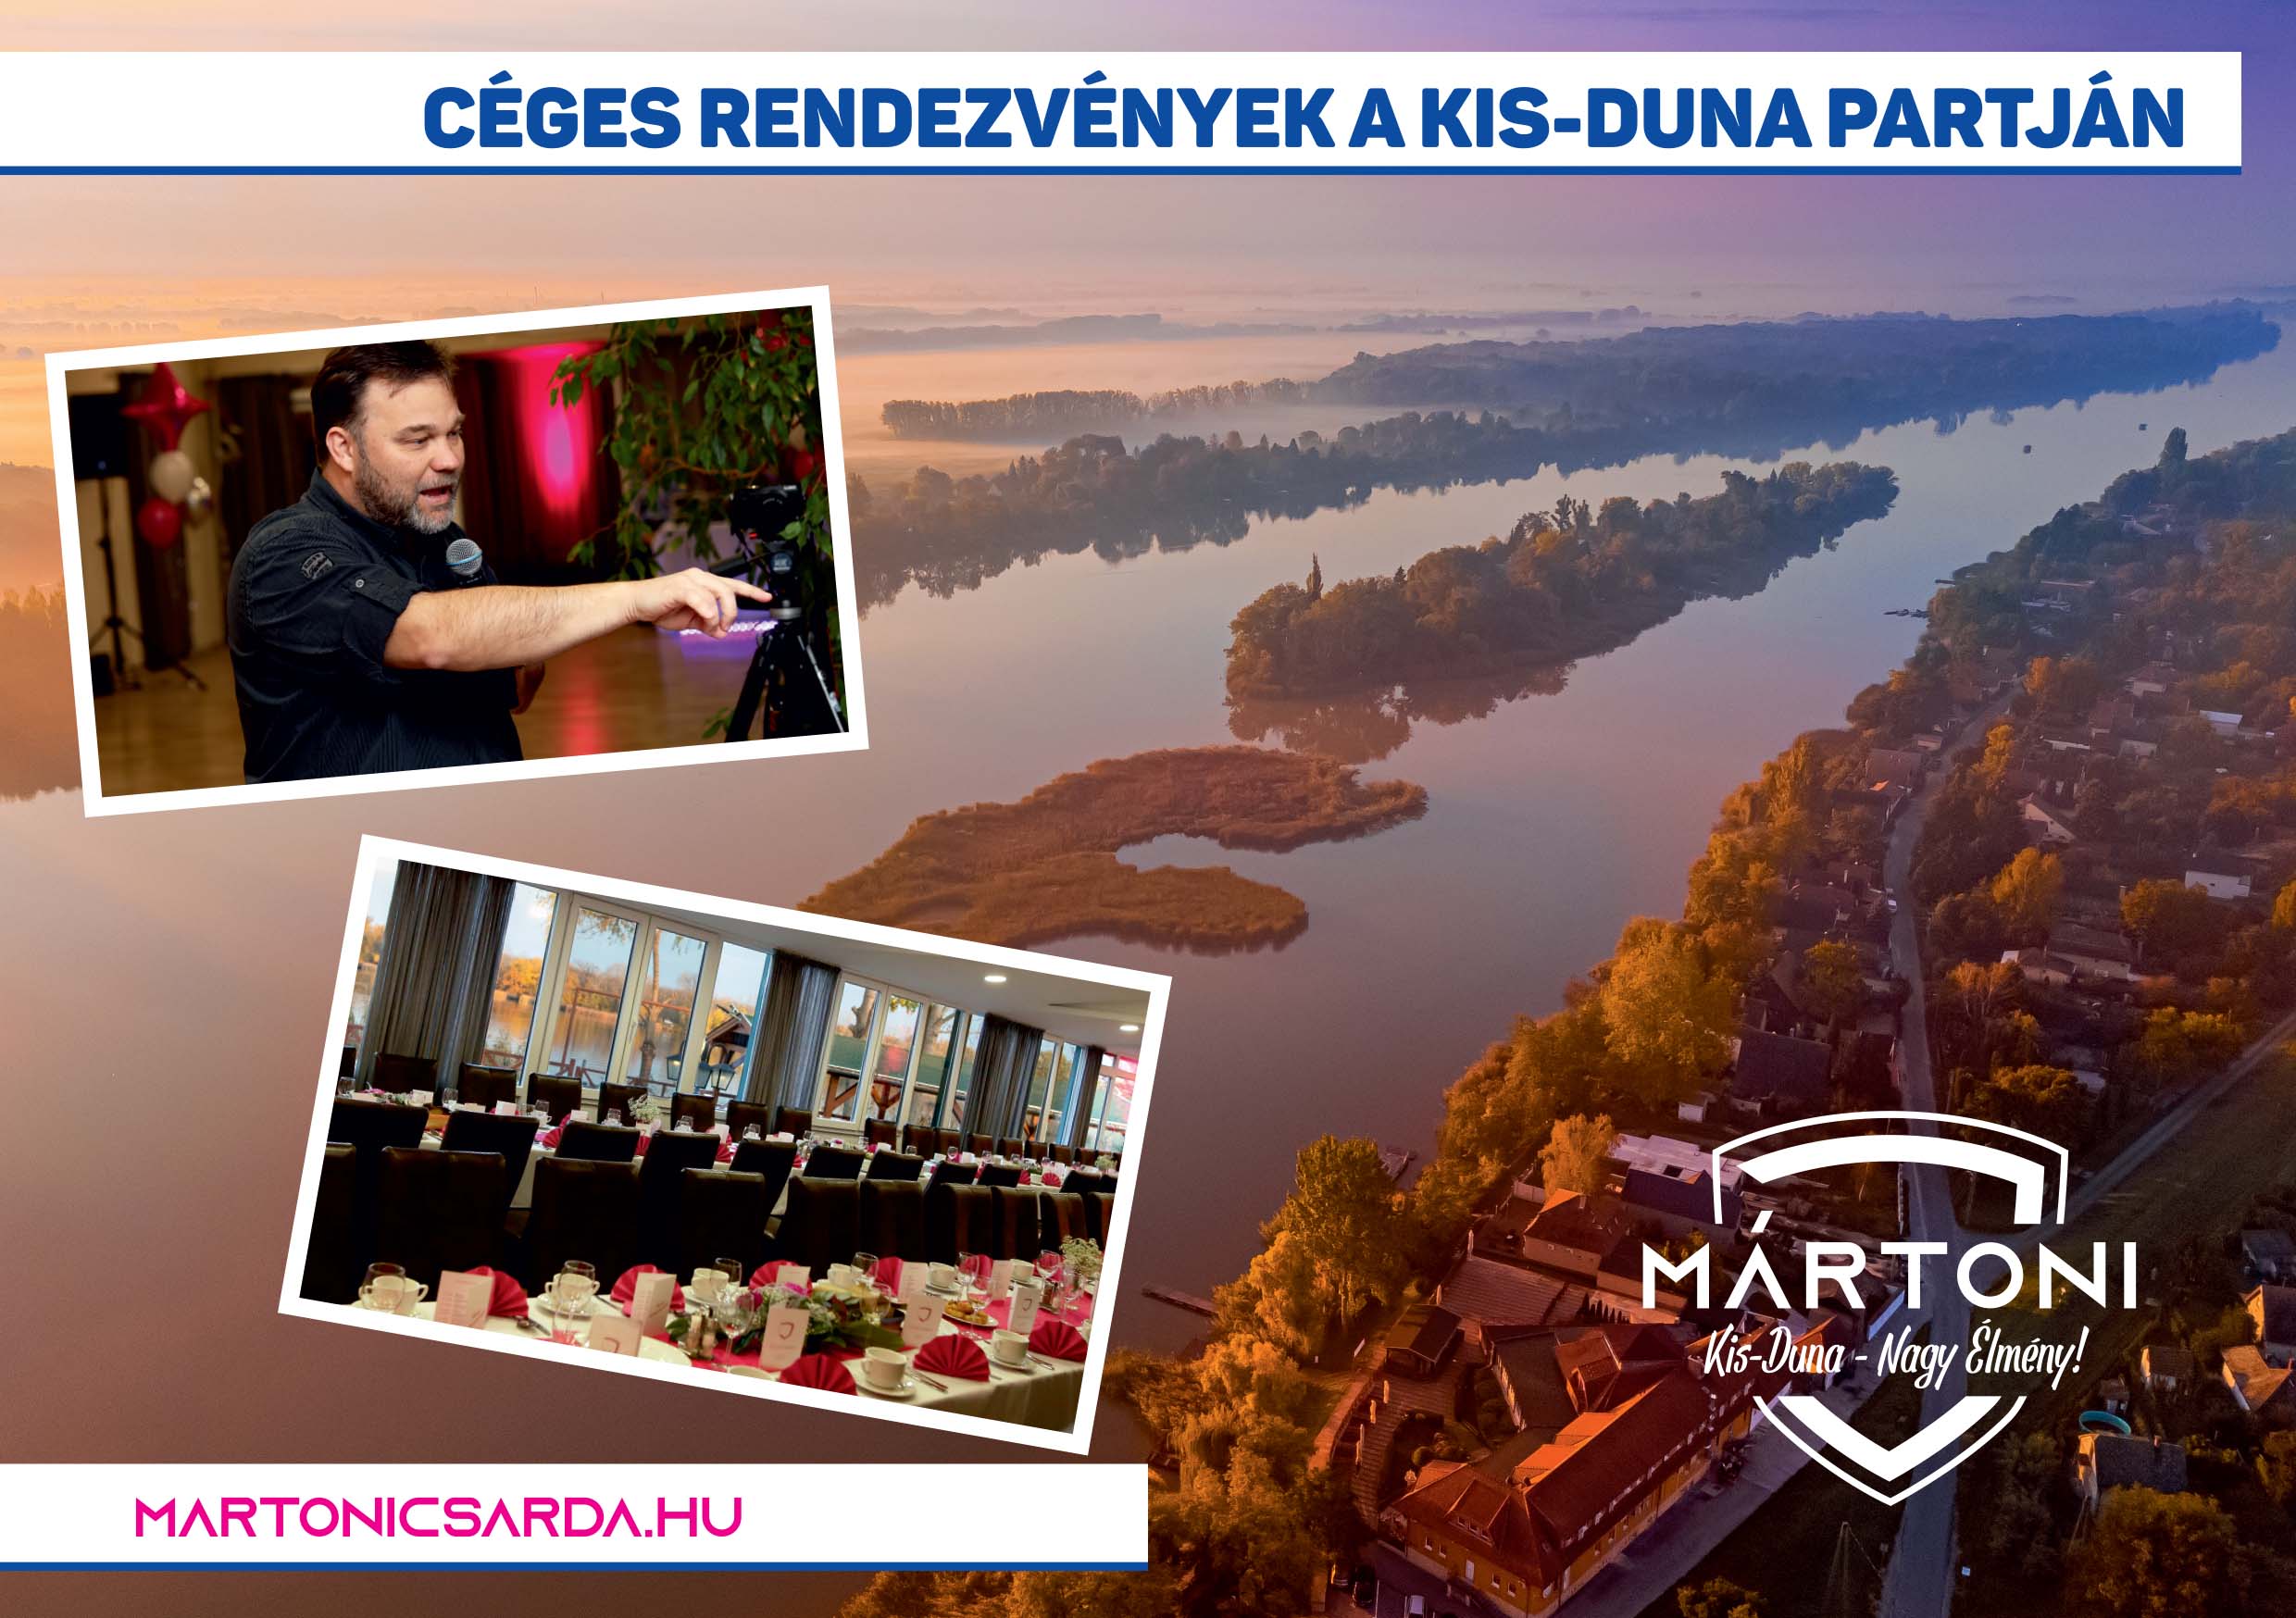 Mártoni Csárda | Céges rendezvények a Kis-Duna partján